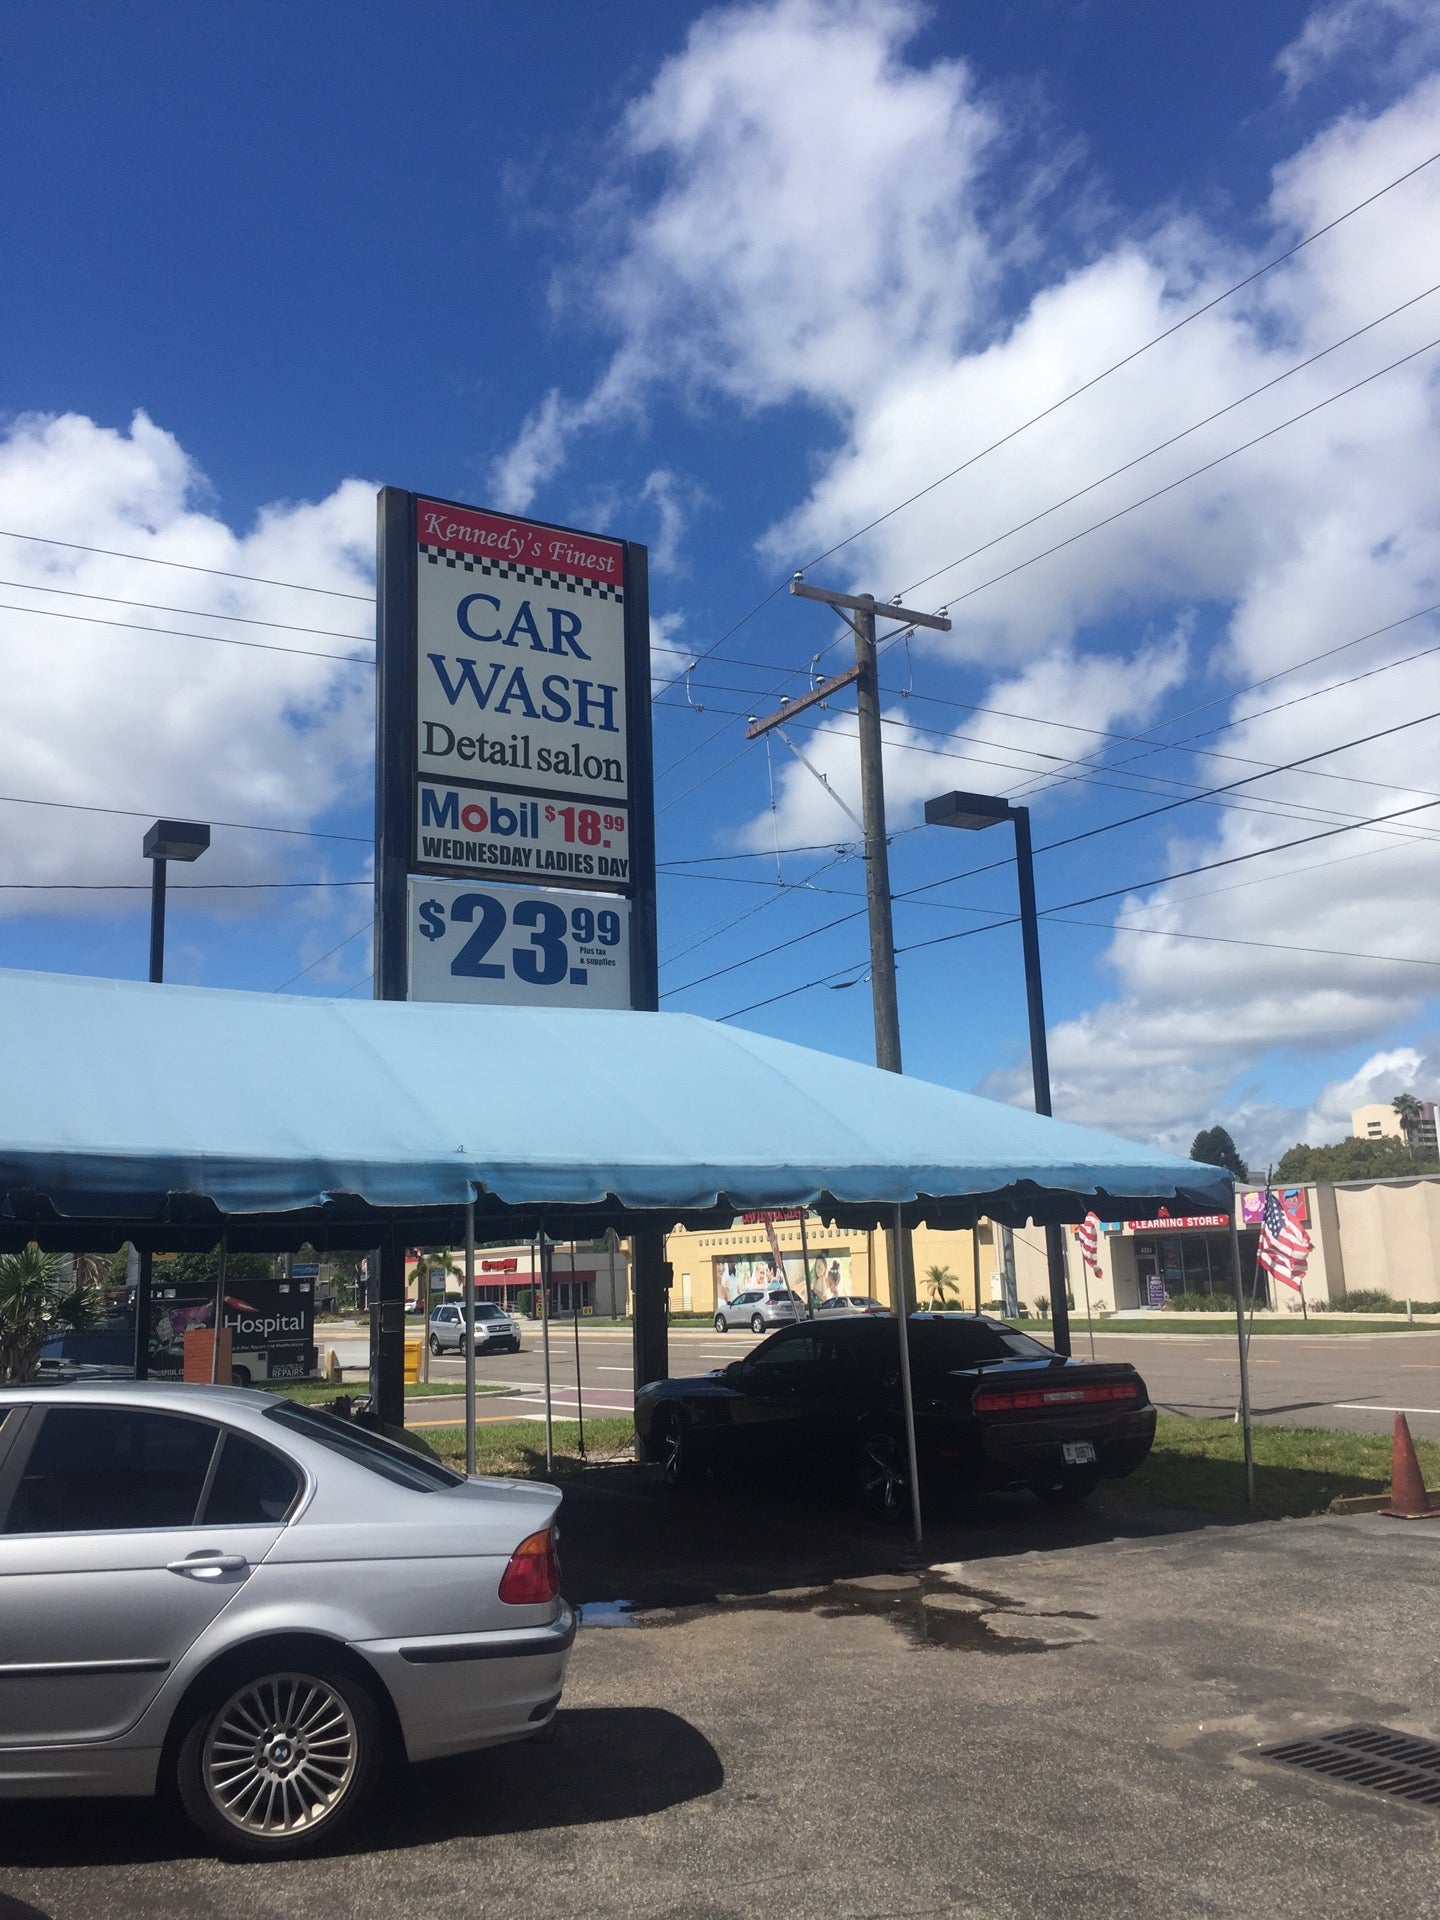 Kennedy's finest carwash - Car Wash